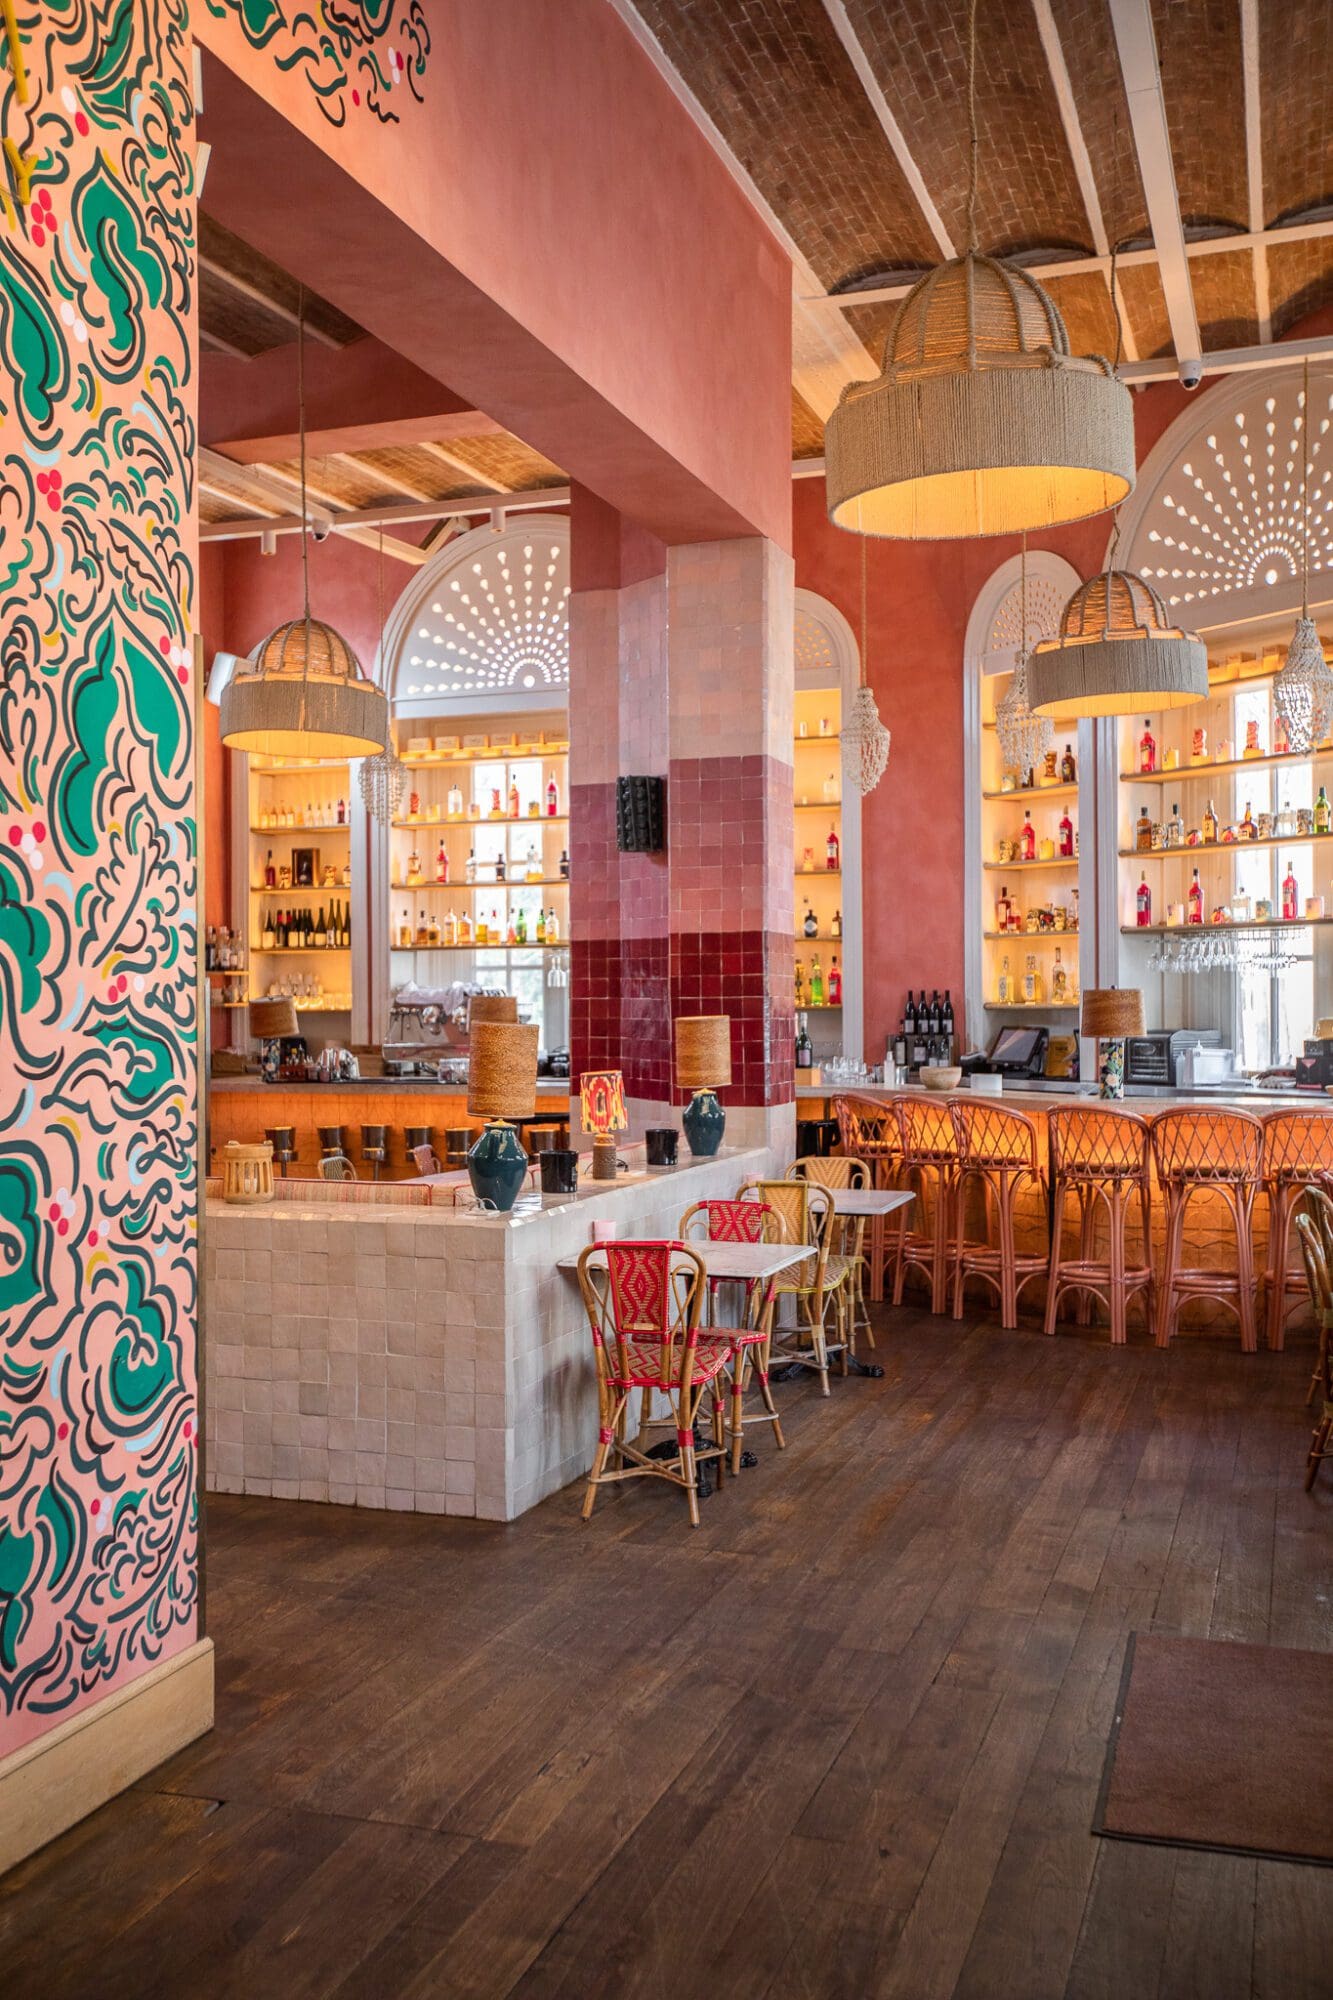 Andia Restaurant Paris Instagram Aesthetic Restaurants Dining Food Sushi Latin American Interiors Pink